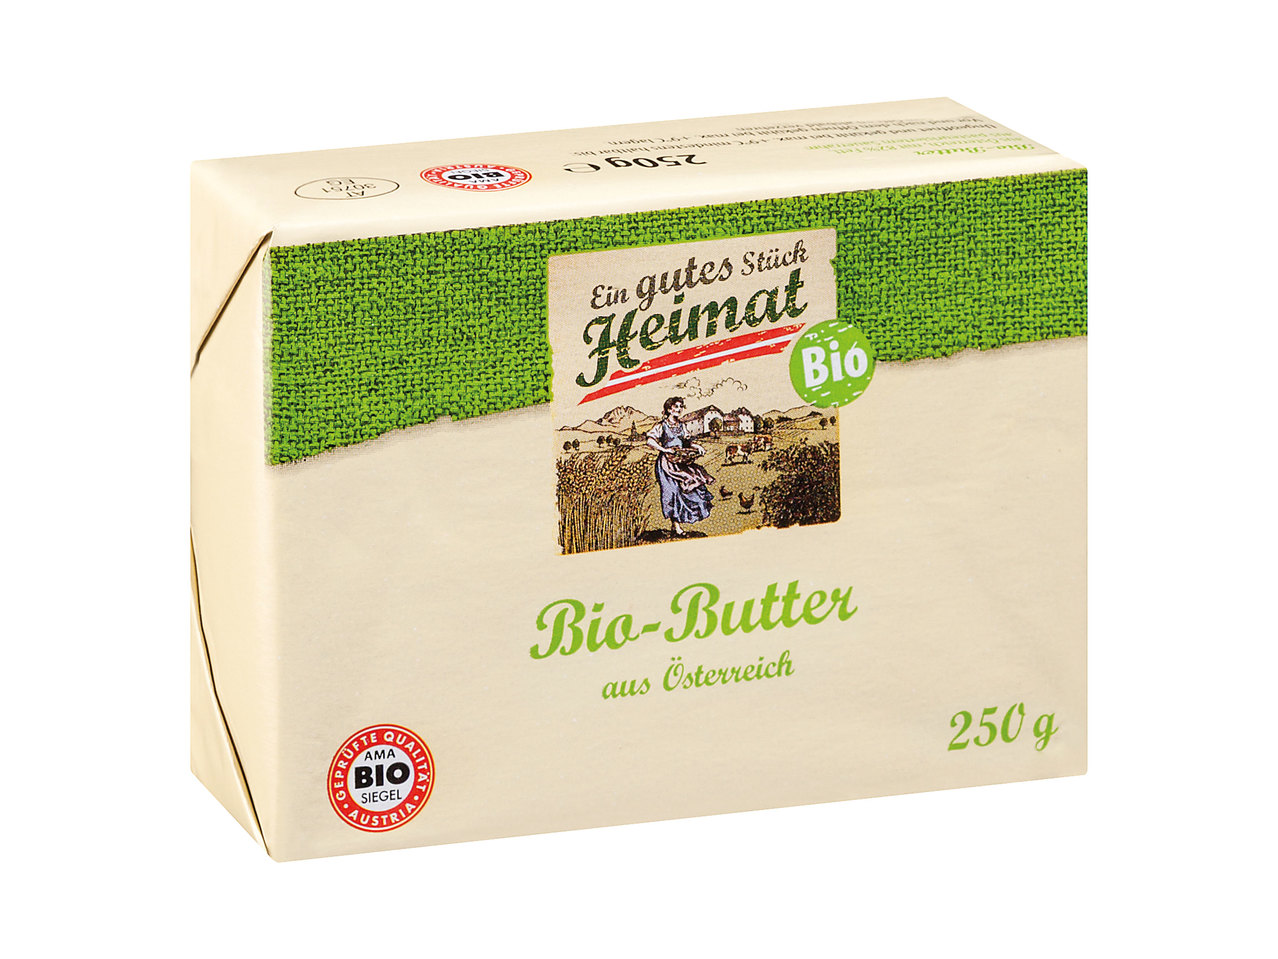 EIN GUTES STÜCK HEIMAT Bio-Butter